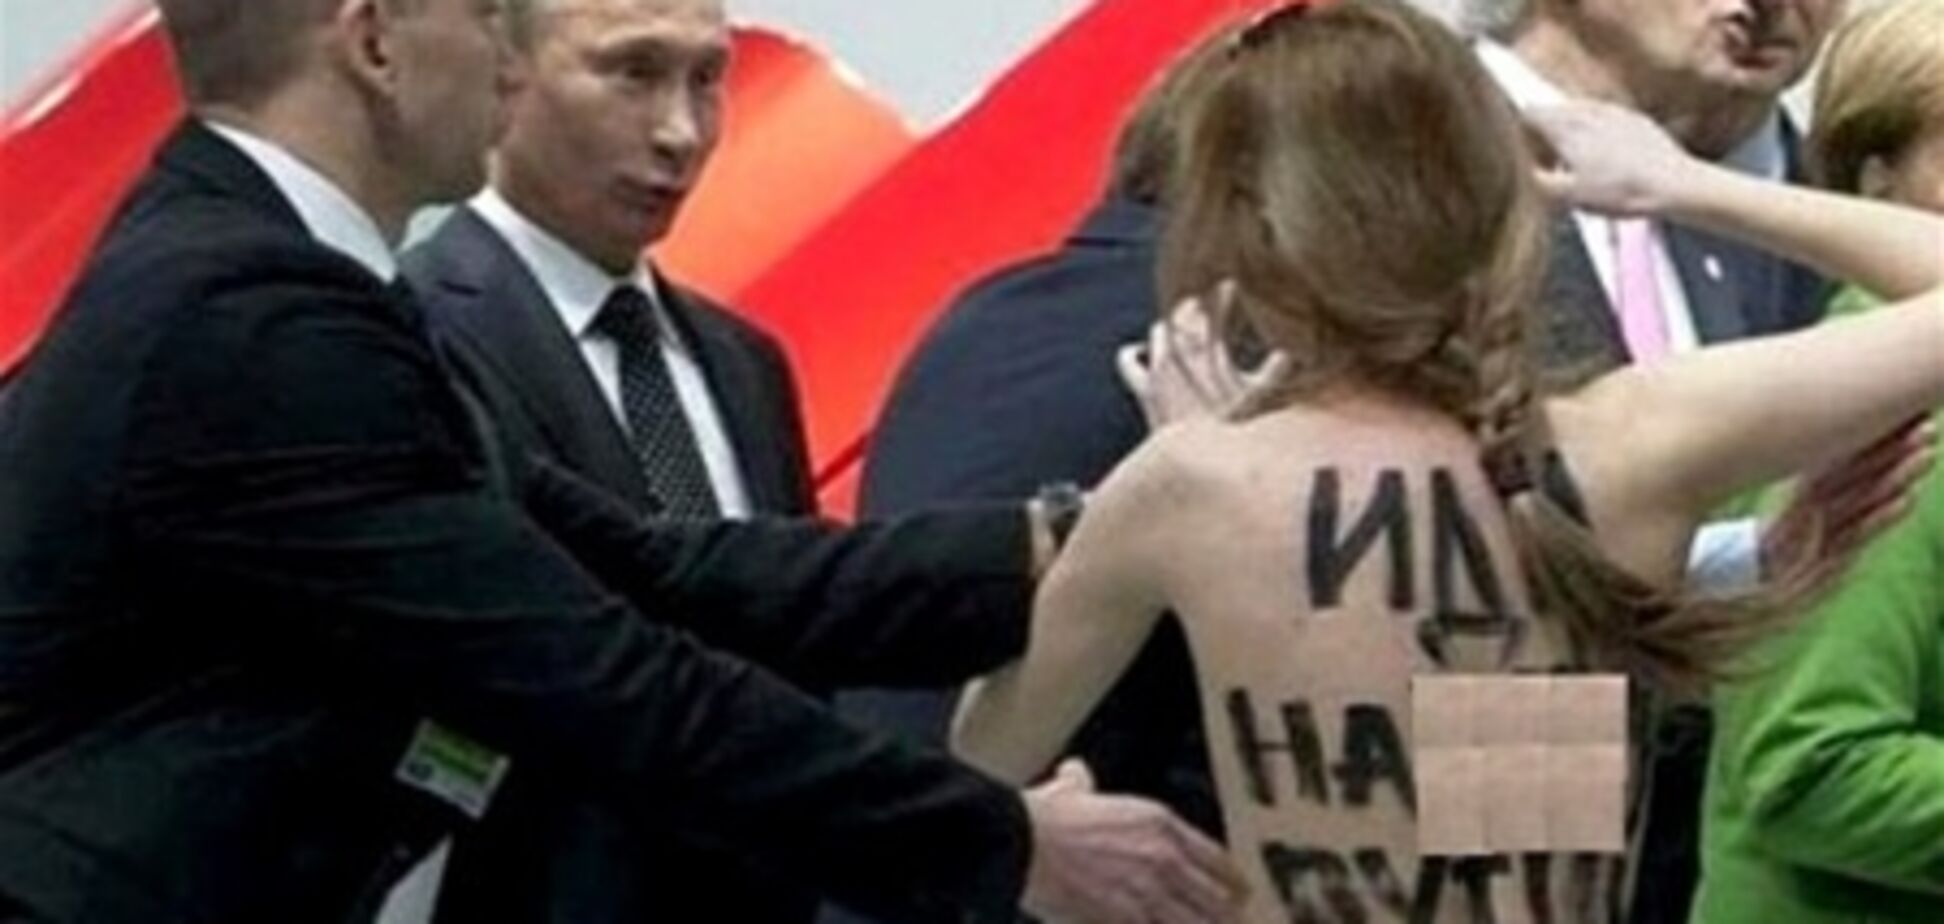 Путин: лучше бы FEMEN колбасу или сало показали